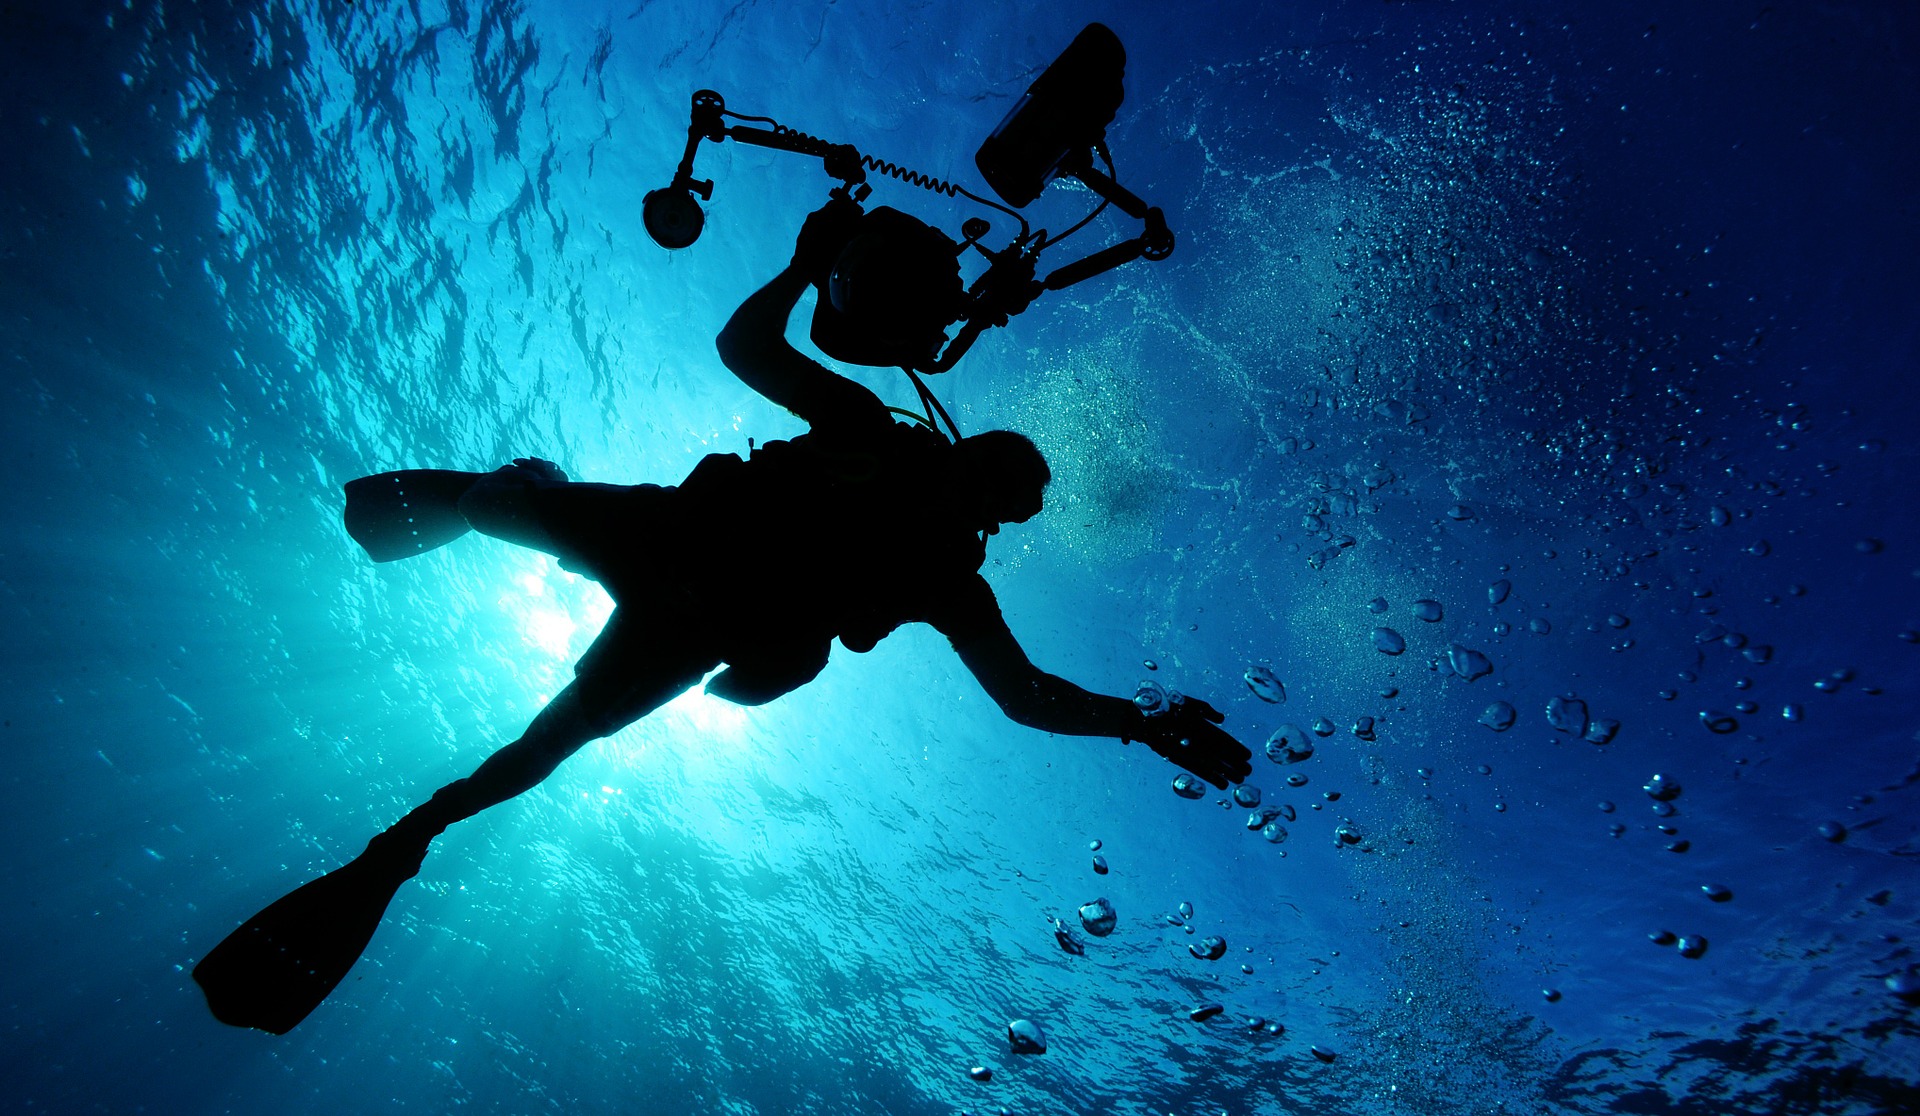 Immersioni subacquee: Informazioni e consigli, con i migliori luoghi per immergersi nelle acque dell’Italia